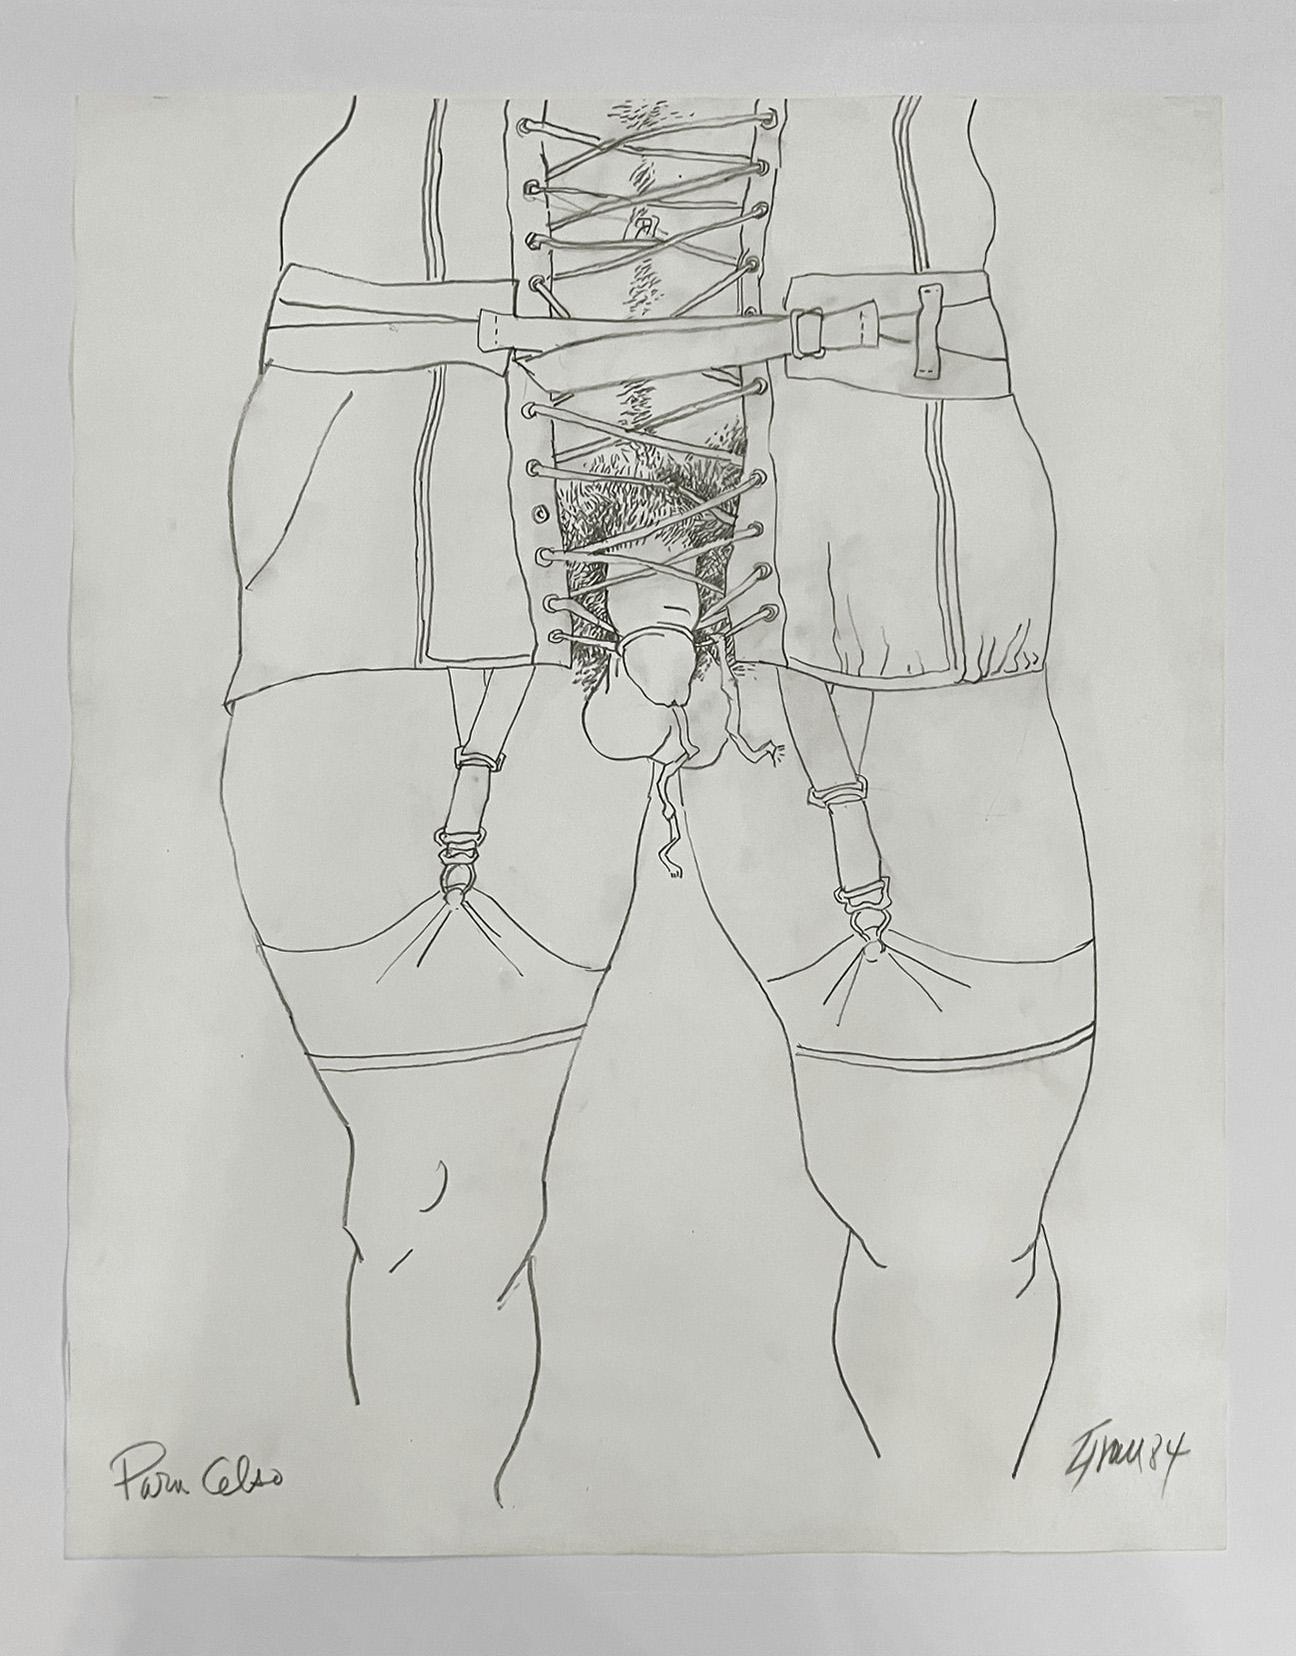 Para Celso, dessin de nu sur papier - Art de Enrique Grau